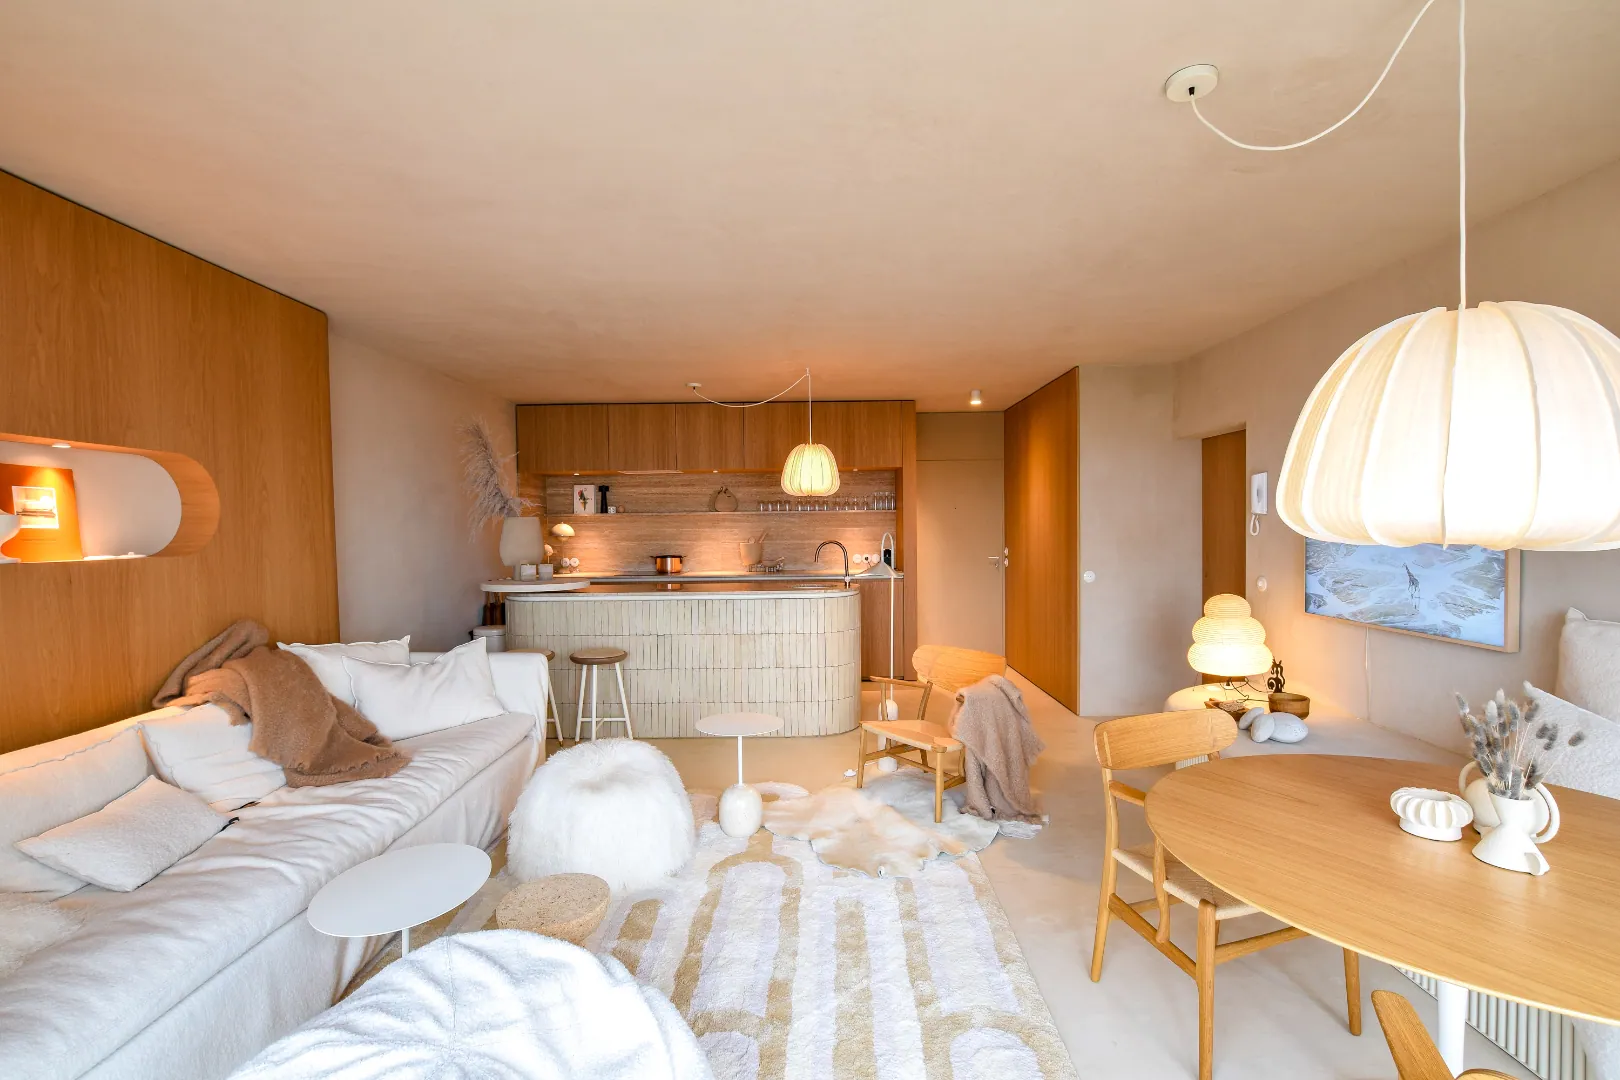 Uniek luxe appartement (70 m²) ontworpen door Loft Living - Design aan zee (volledig ingericht)!